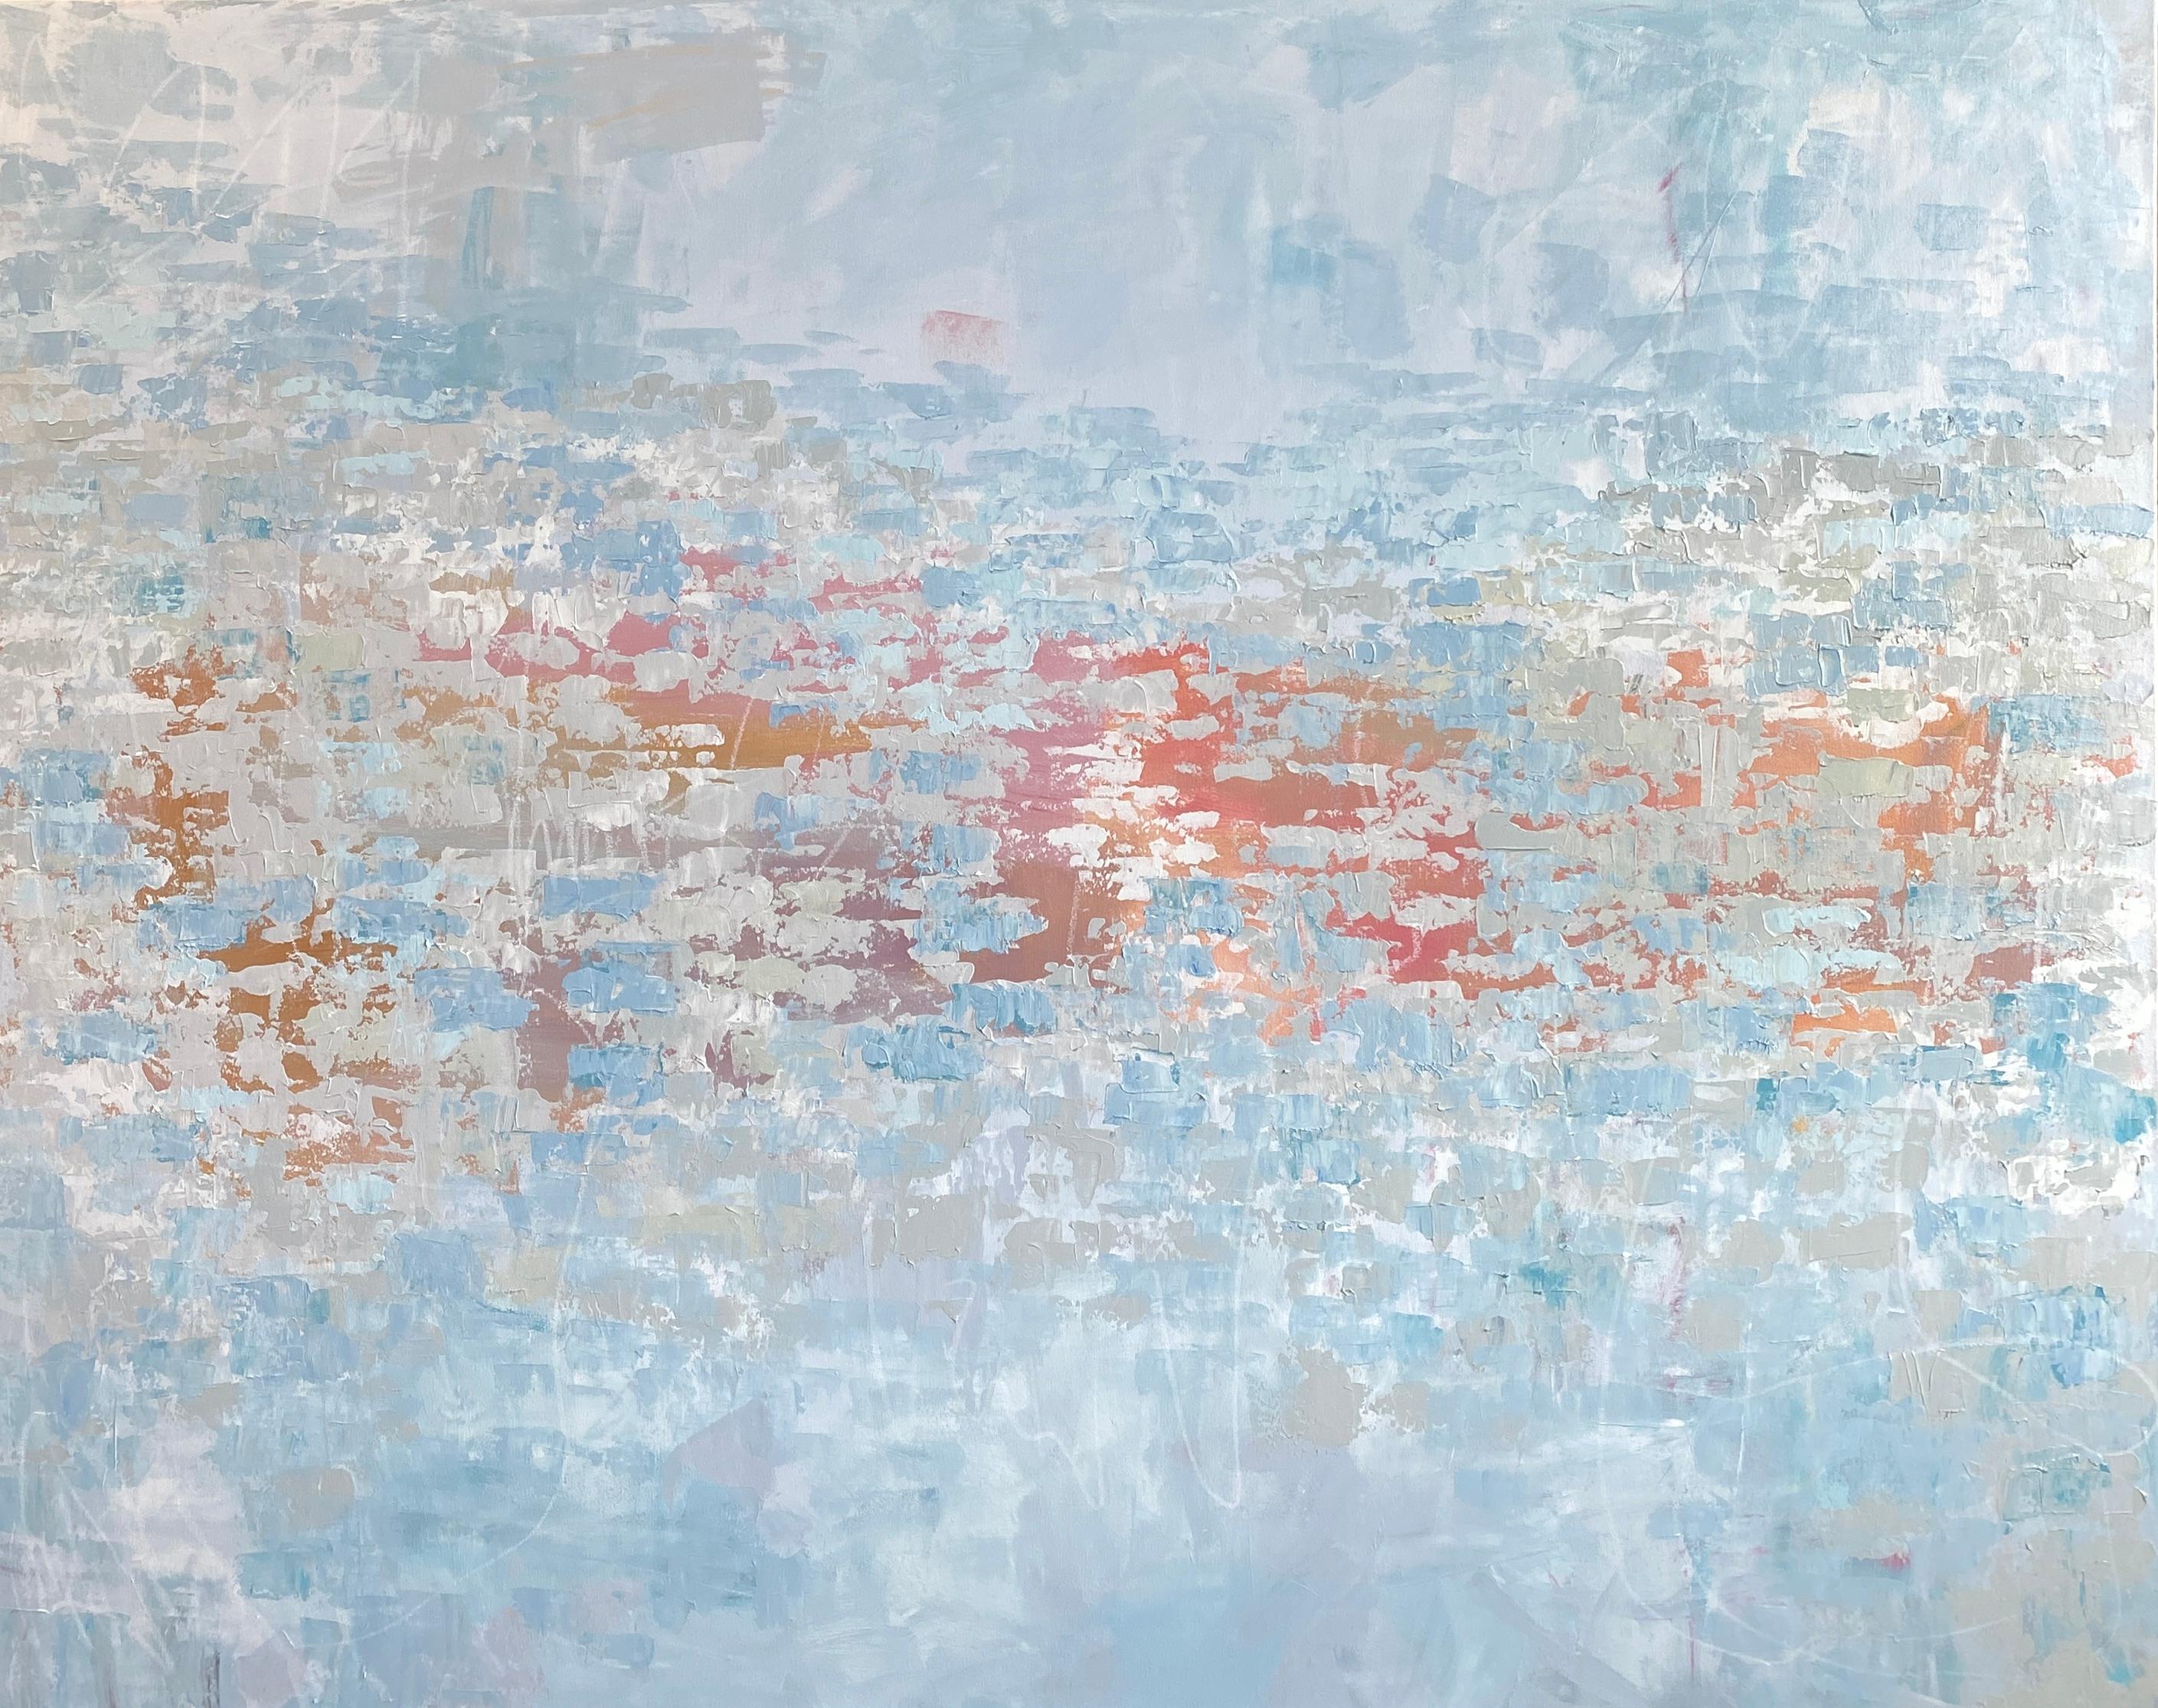 Abstract Painting Kim Romero - Seau nuageux, peinture abstraite, acrylique sur toile, signée 